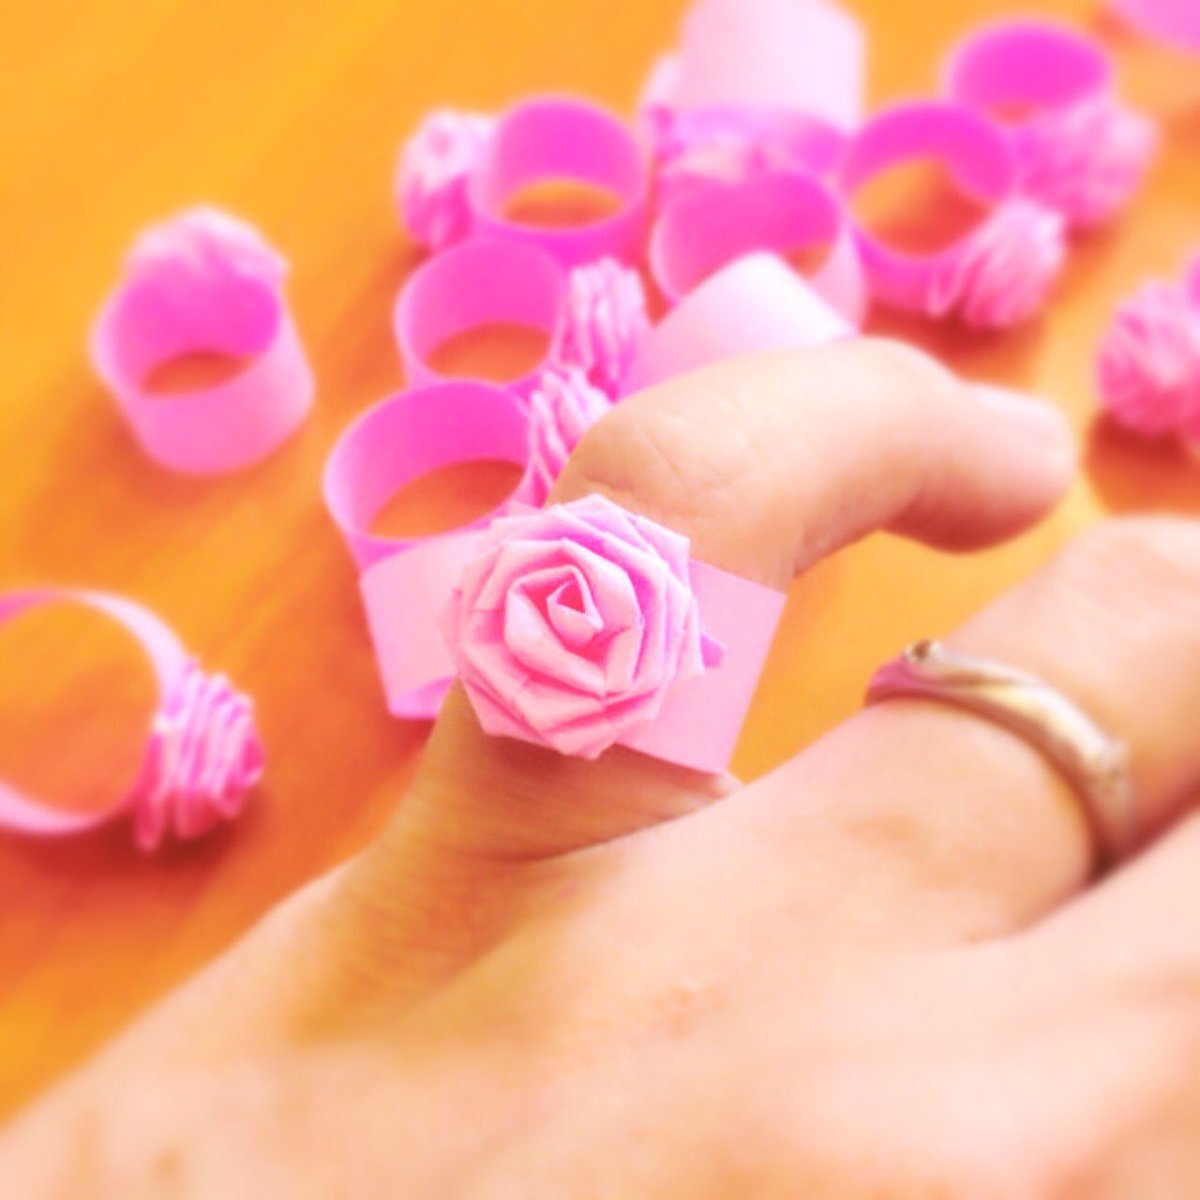 紙龍 Siryu みなさん去年の今頃はどんな作品作ってましたか 簡単に作れるバラの花のペーパークラフトの紹介してました 簡単に作れるので興味のある方はピューロランドで作り方教えますよ